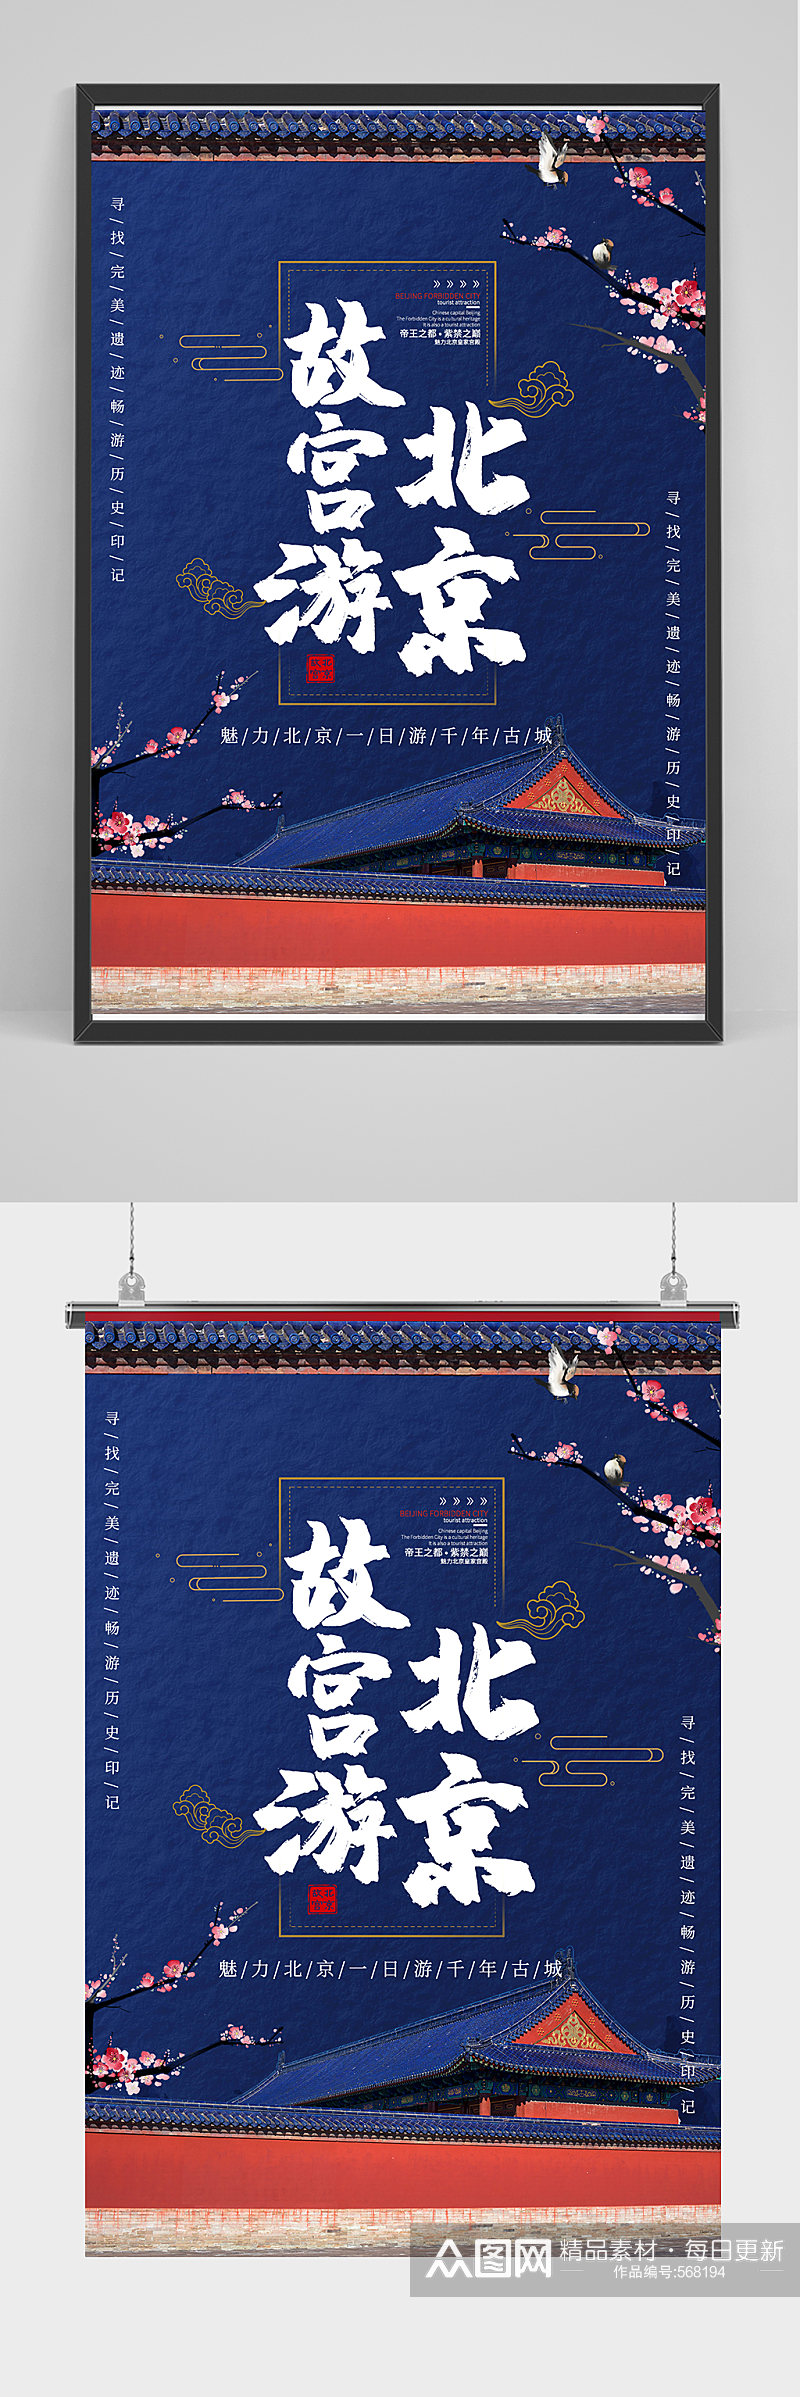 蓝色大气北京故宫之旅旅游海报素材